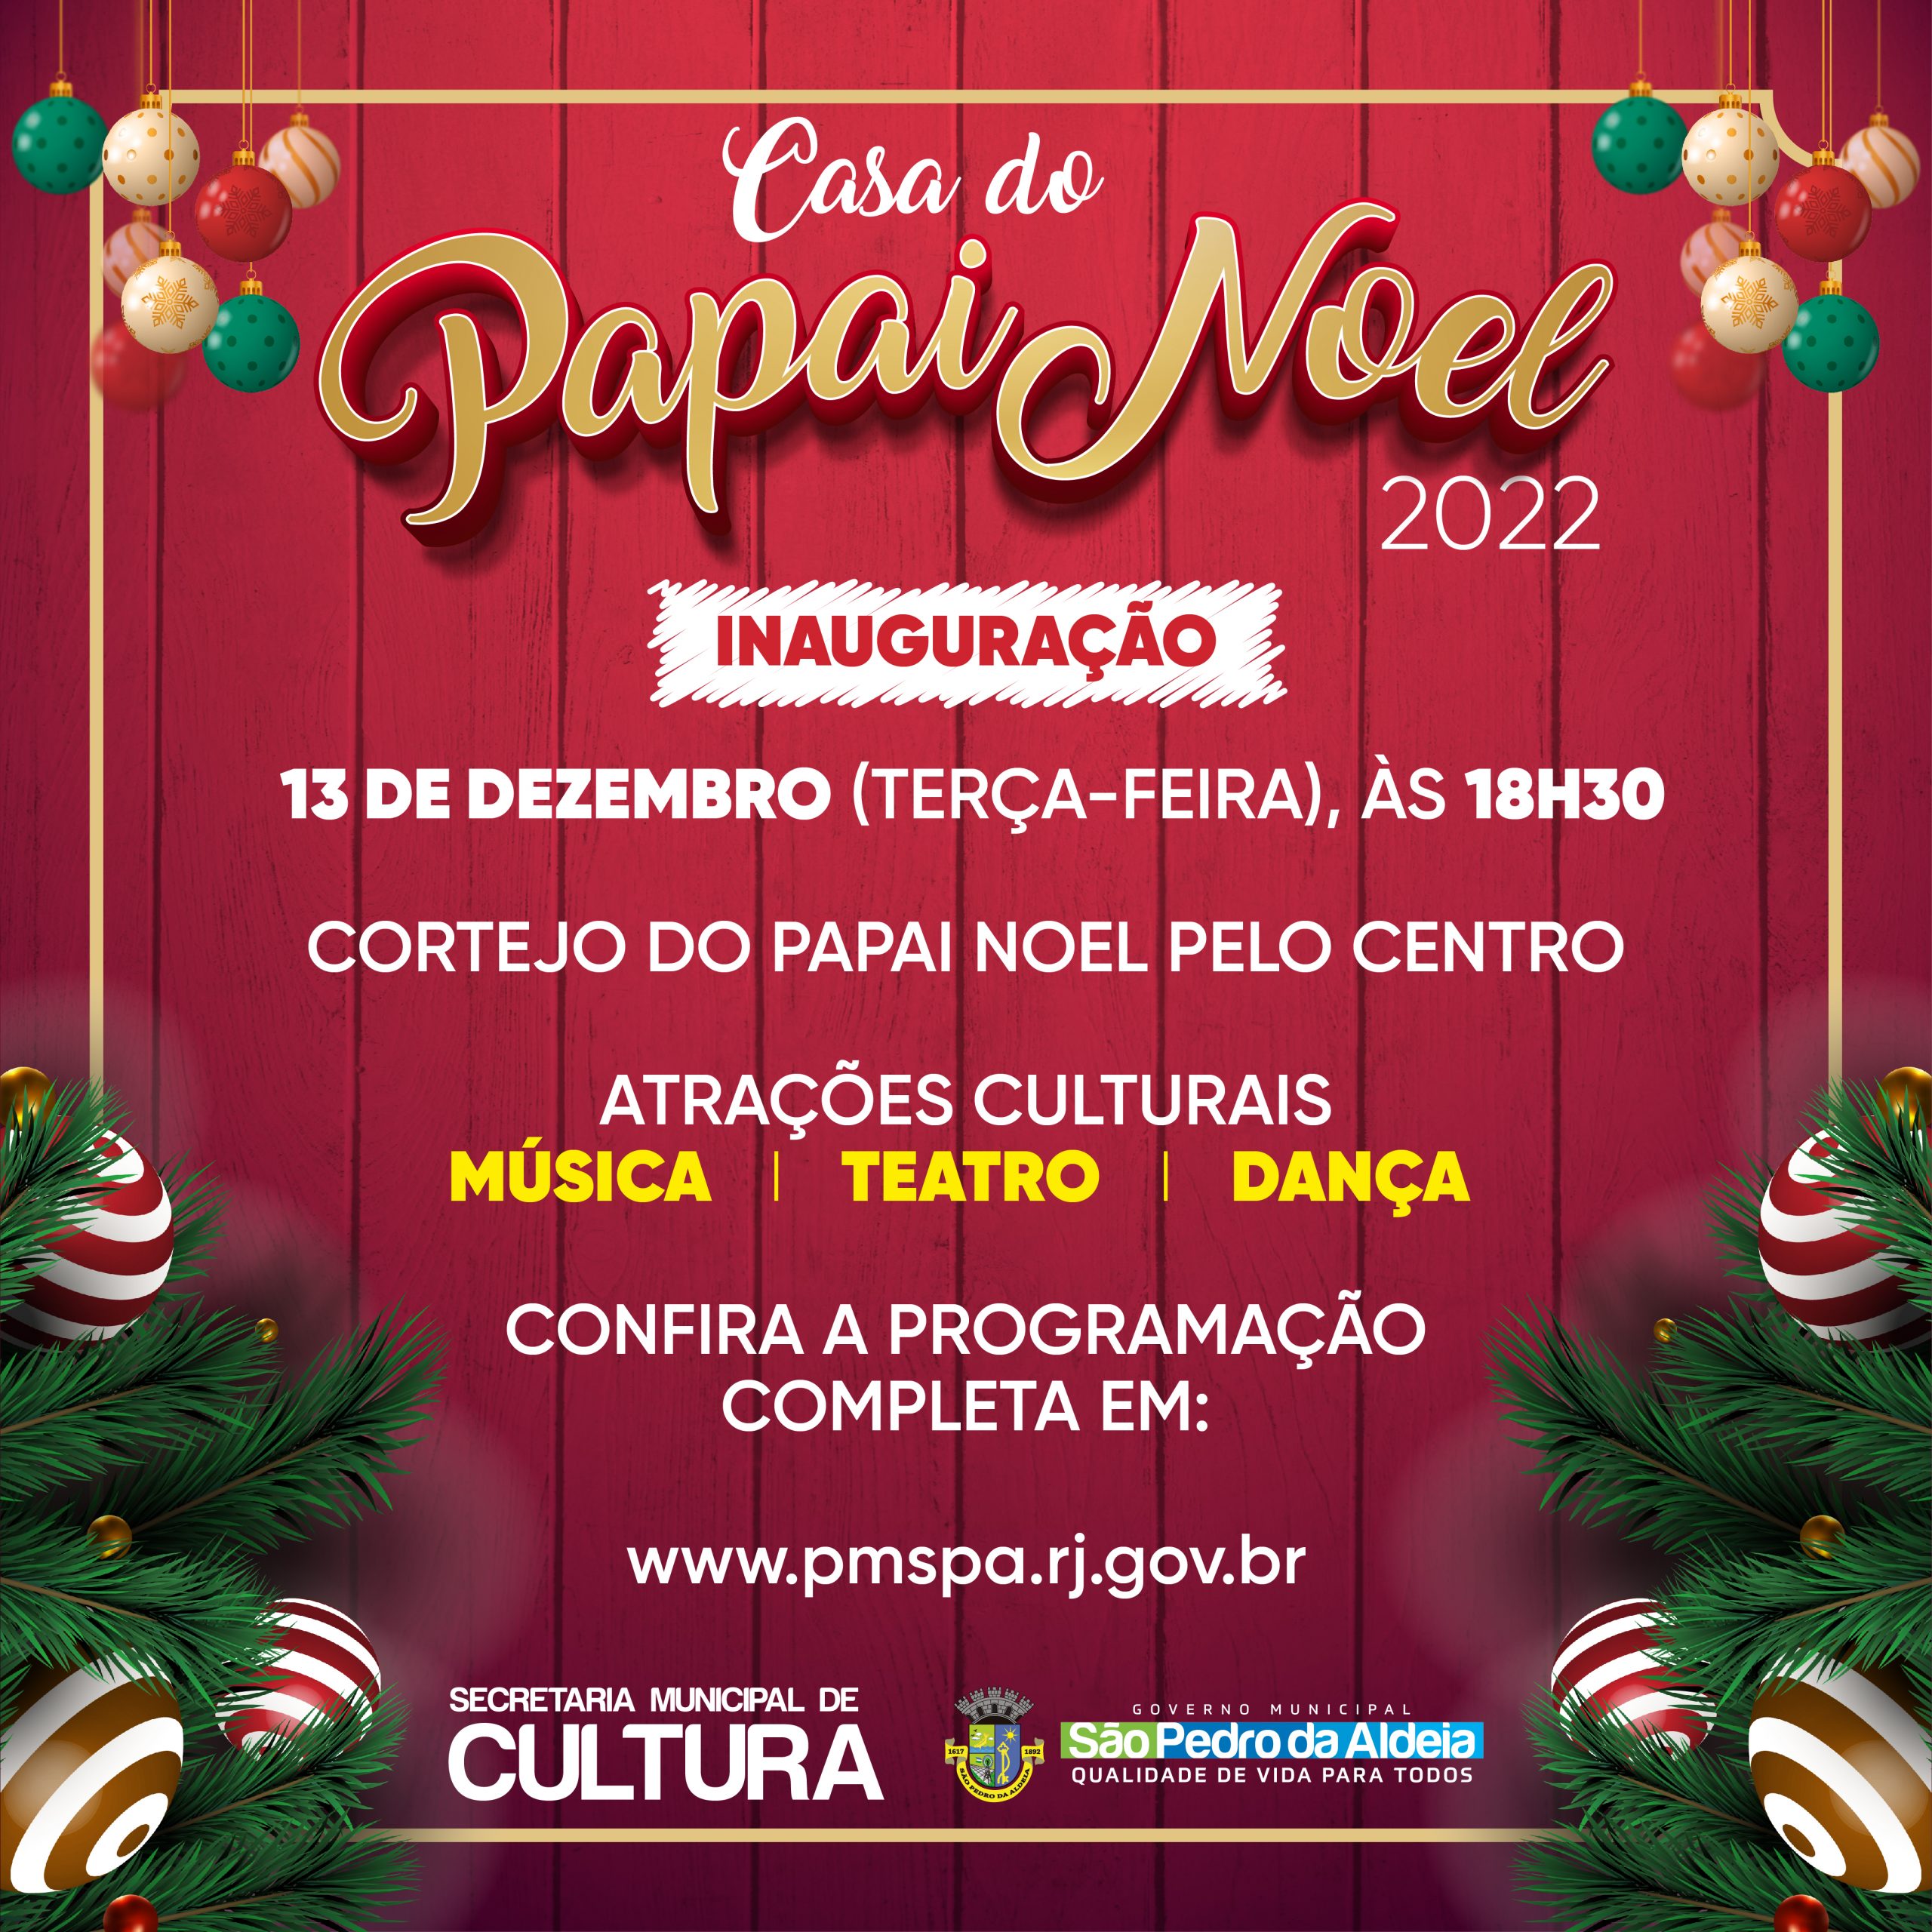 Casa do Papai Noel será inaugurada nesta terça-feira (13) em São Pedro da Aldeia